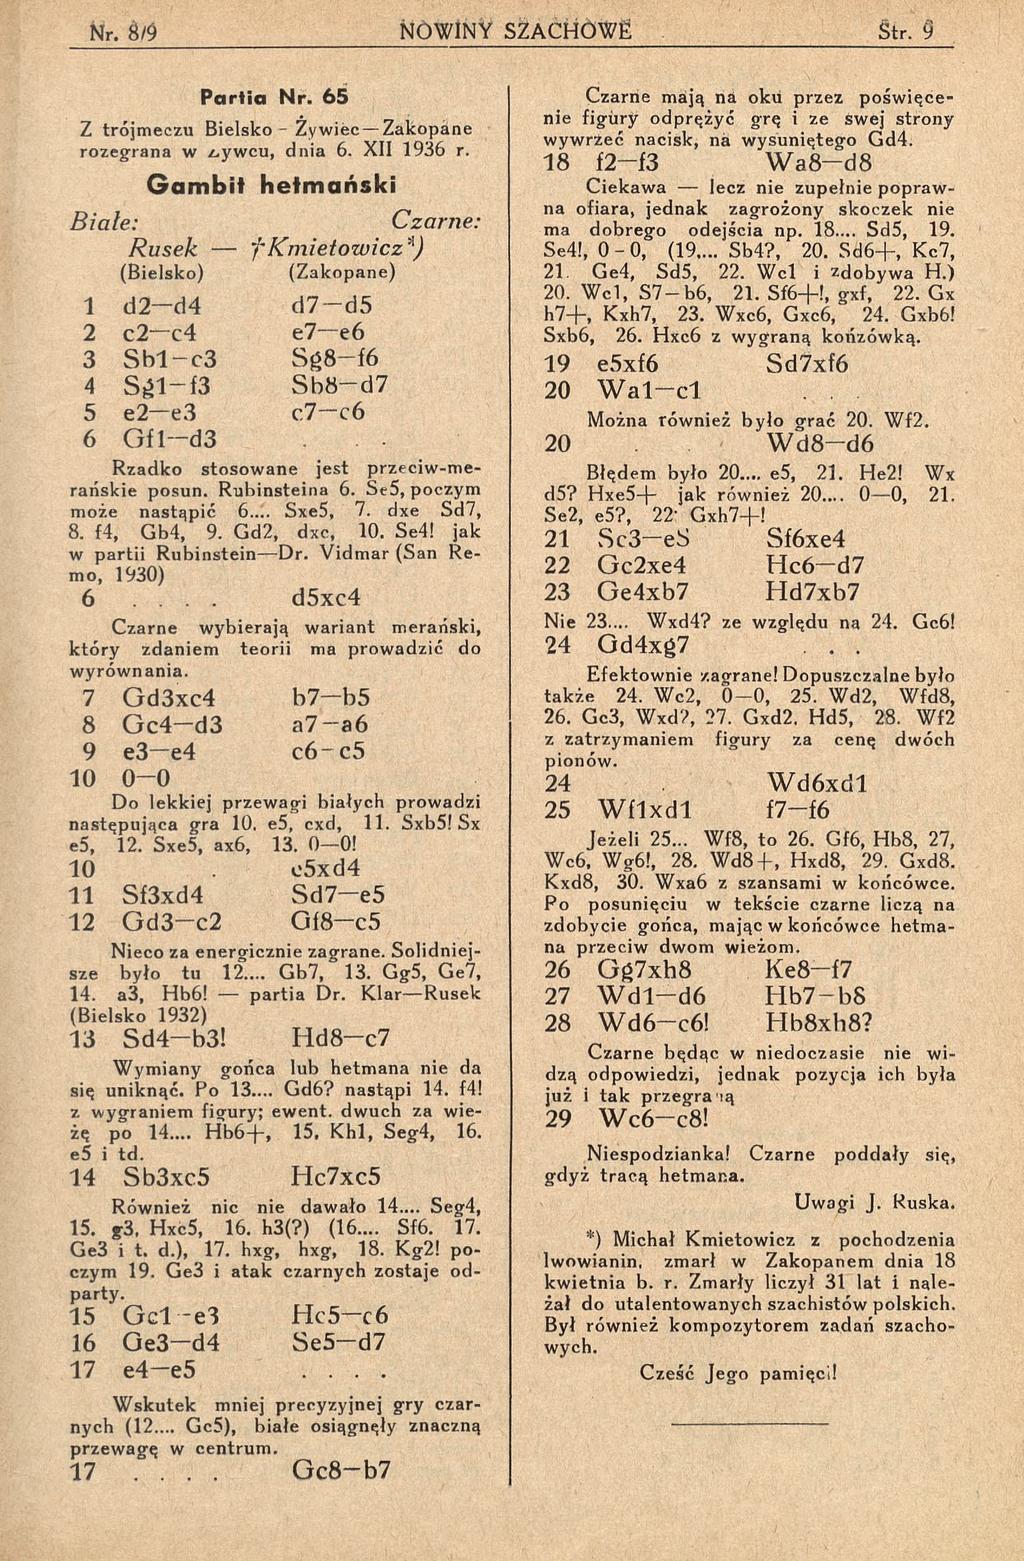 P a r tia N r. 6 5 Z trójmeczu Bielsko - Żywiec Zakopane rozegrana w żyw cu, dnia 6. XII 1936 r.